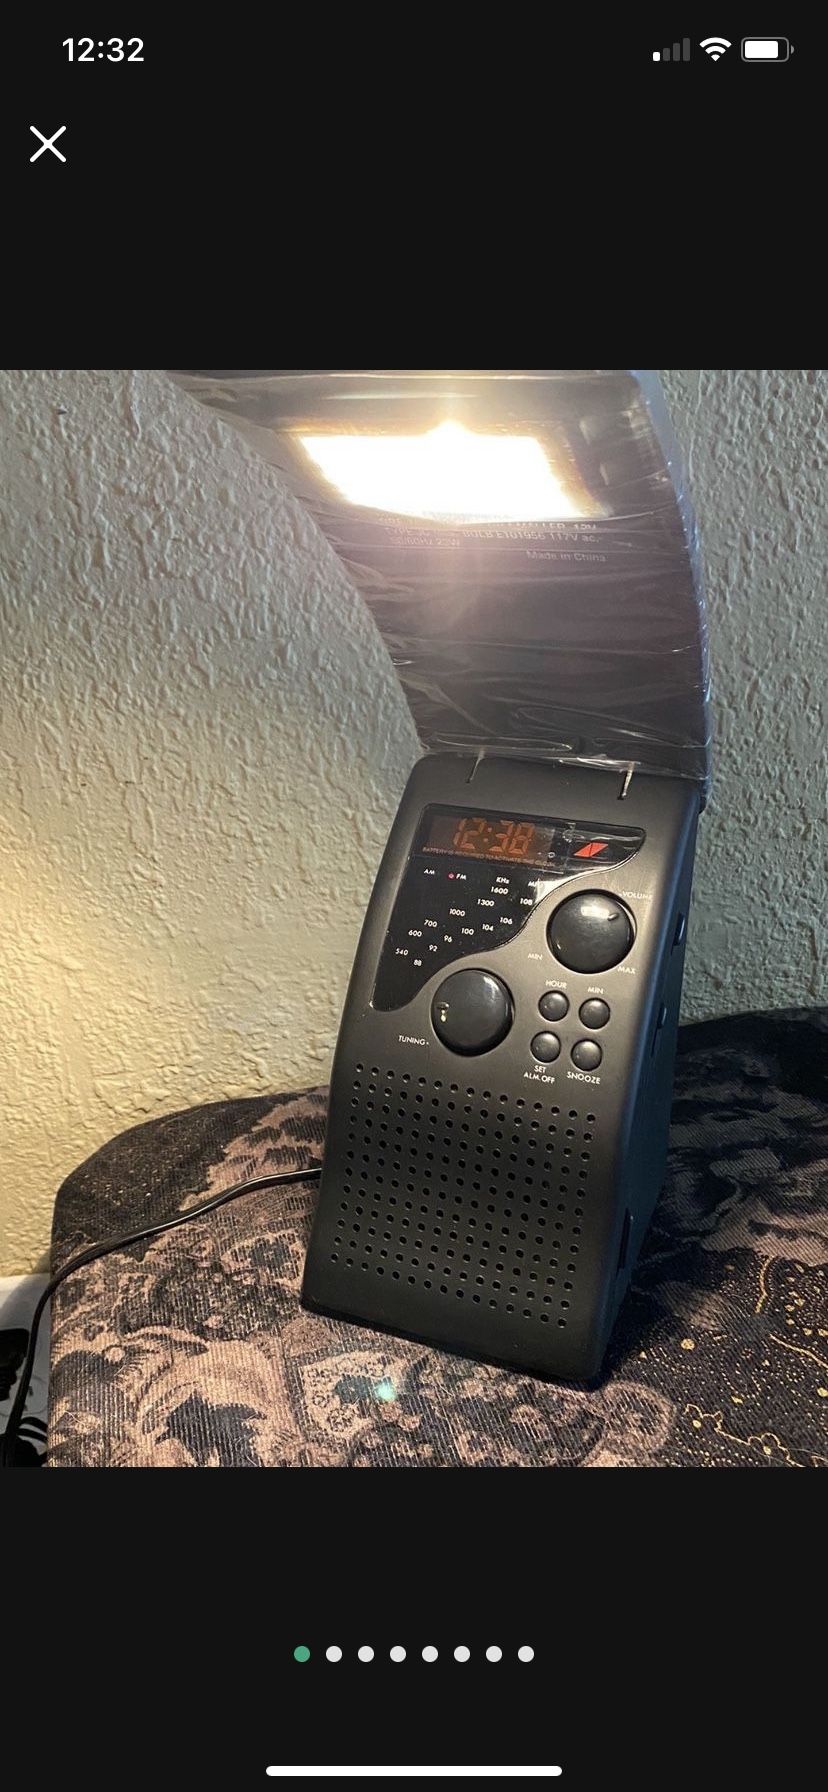 Folding Lamp Alarm Clock Radio $15